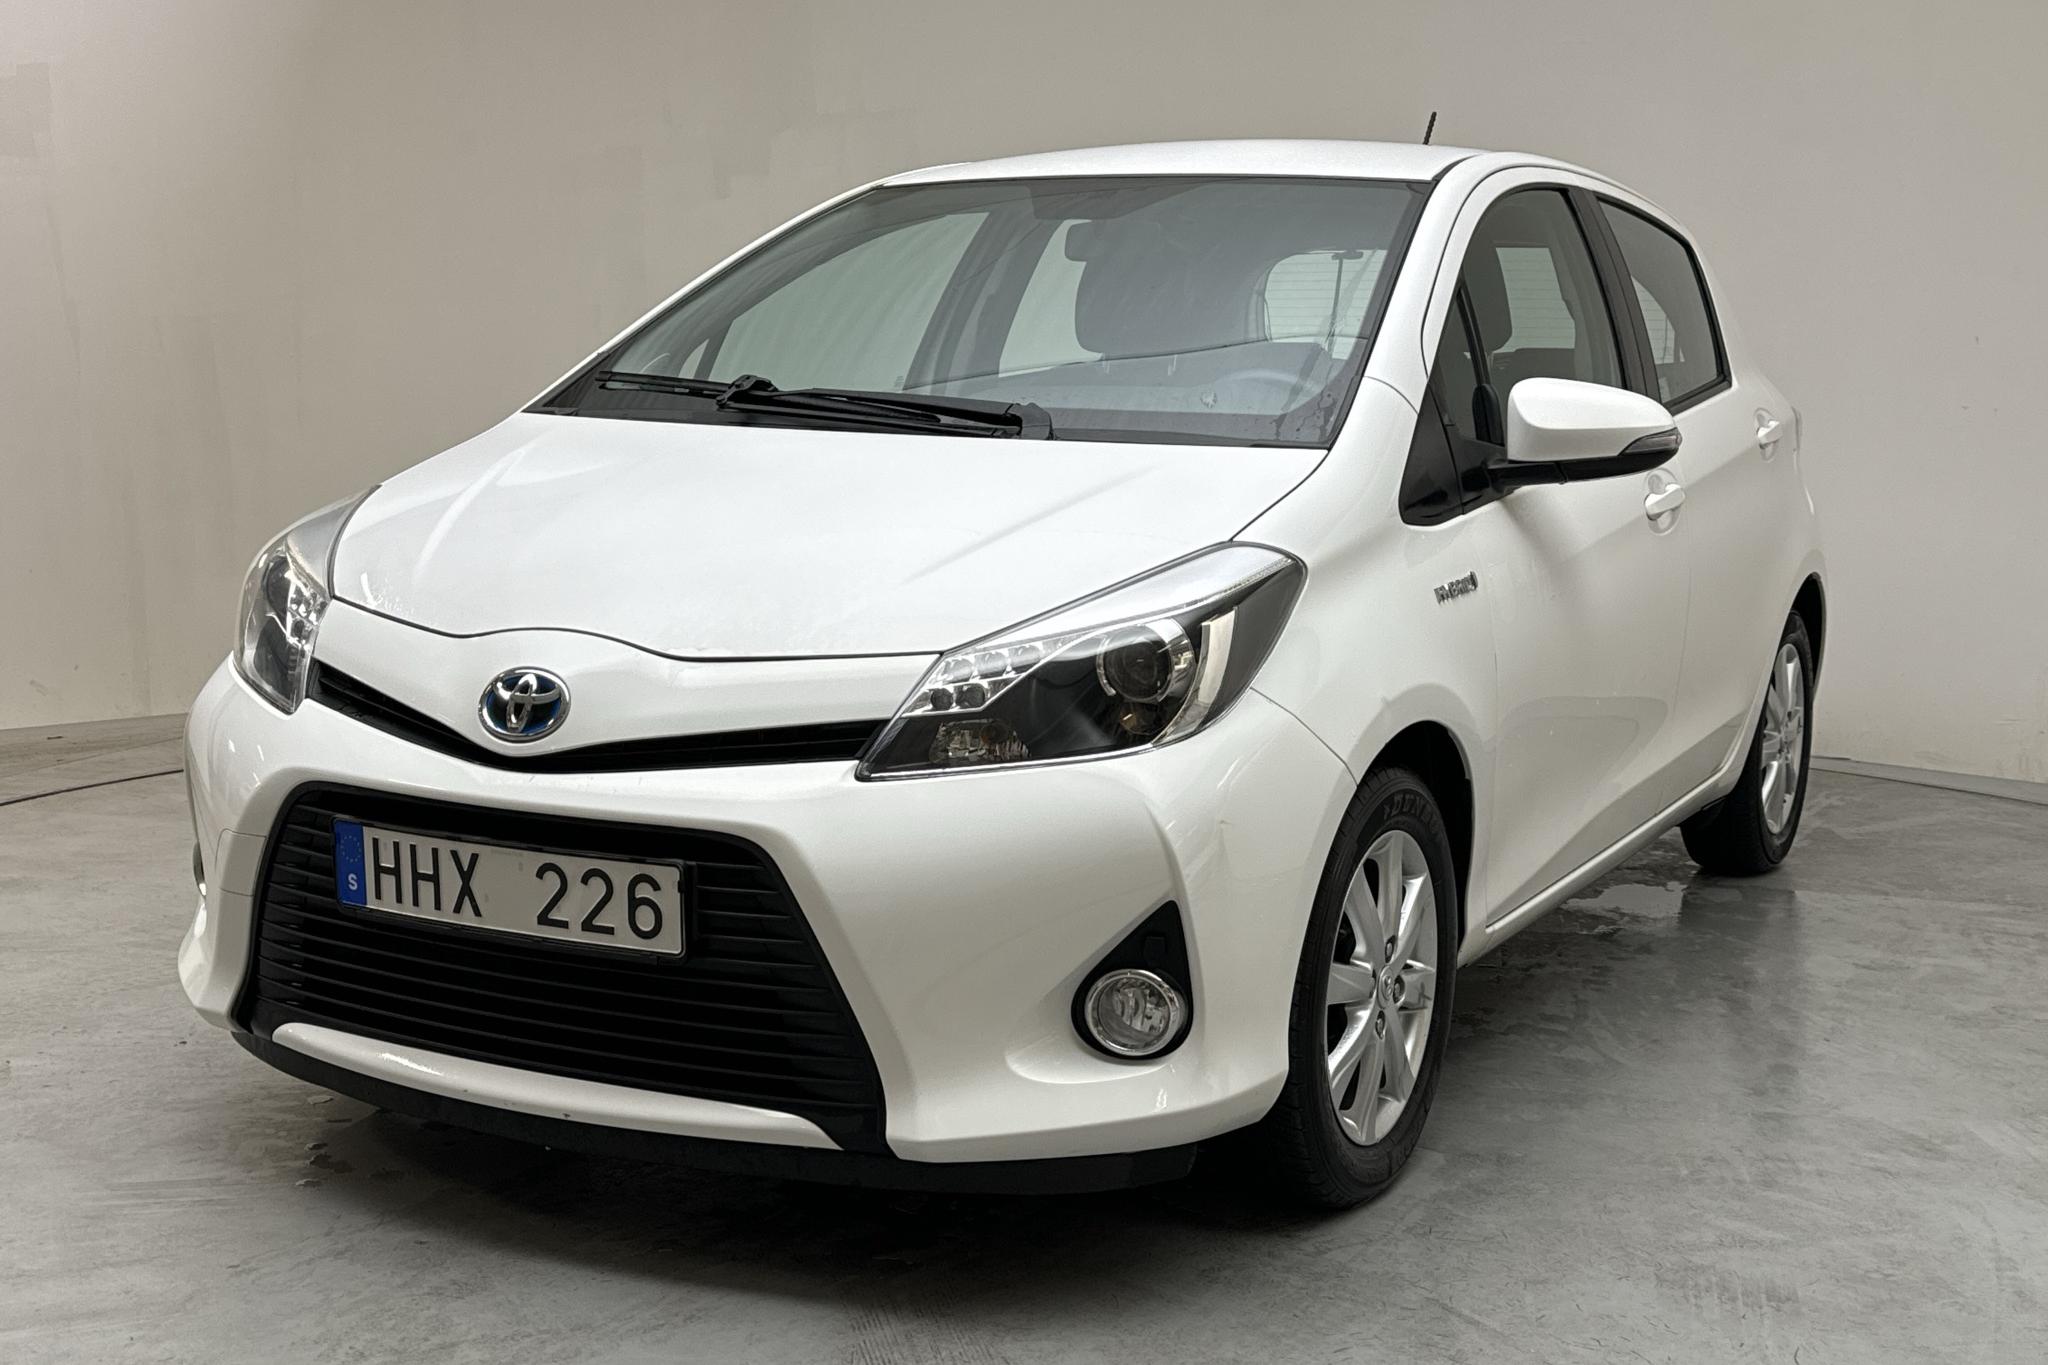 Toyota Yaris 1.5 HSD 5dr (75hk) - 56 740 km - Automatyczna - biały - 2014